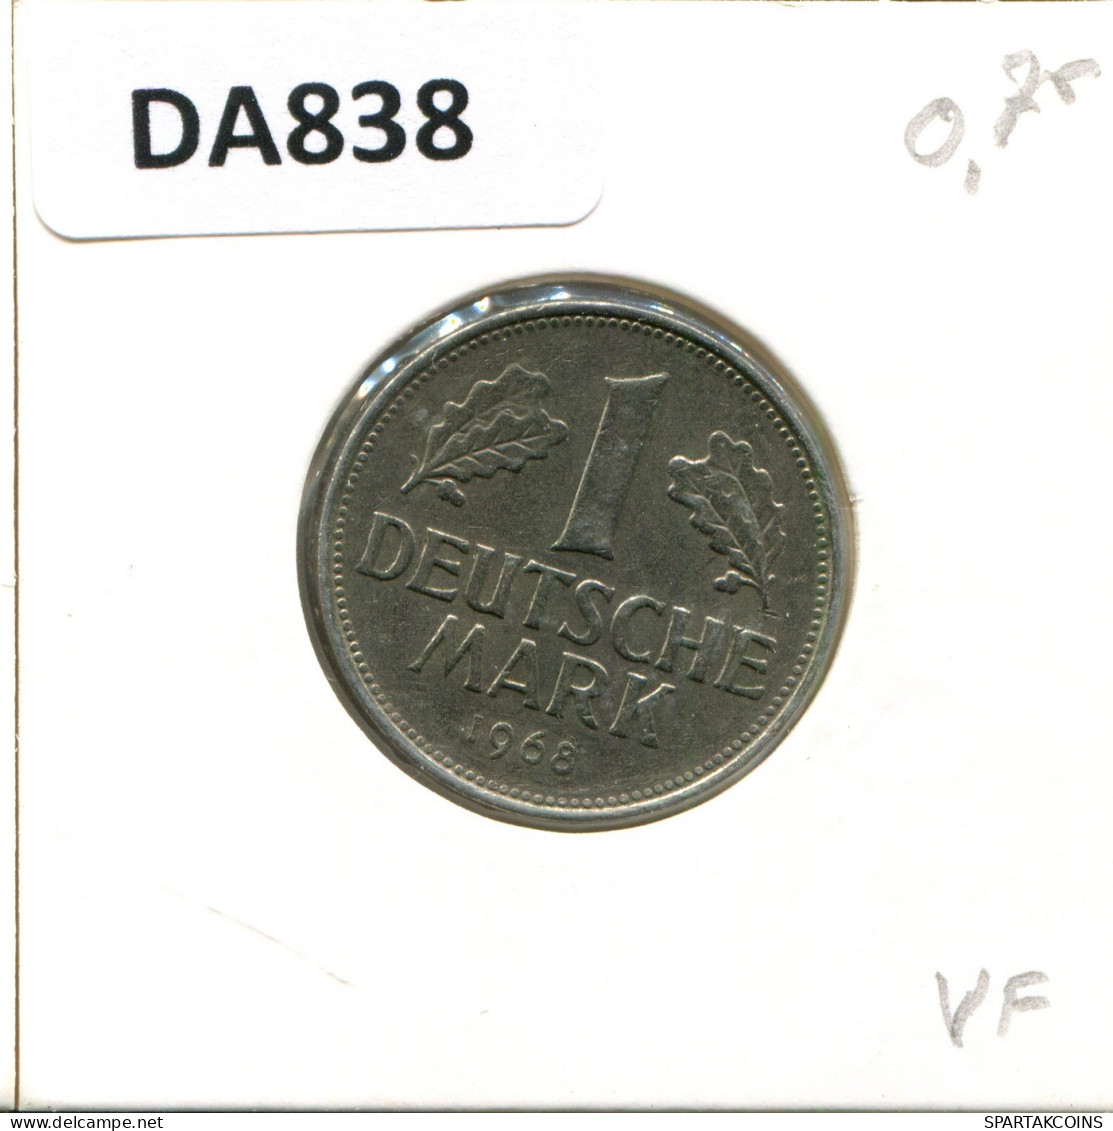 1 DM 1968 F BRD ALEMANIA Moneda GERMANY #DA838.E.A - 1 Mark